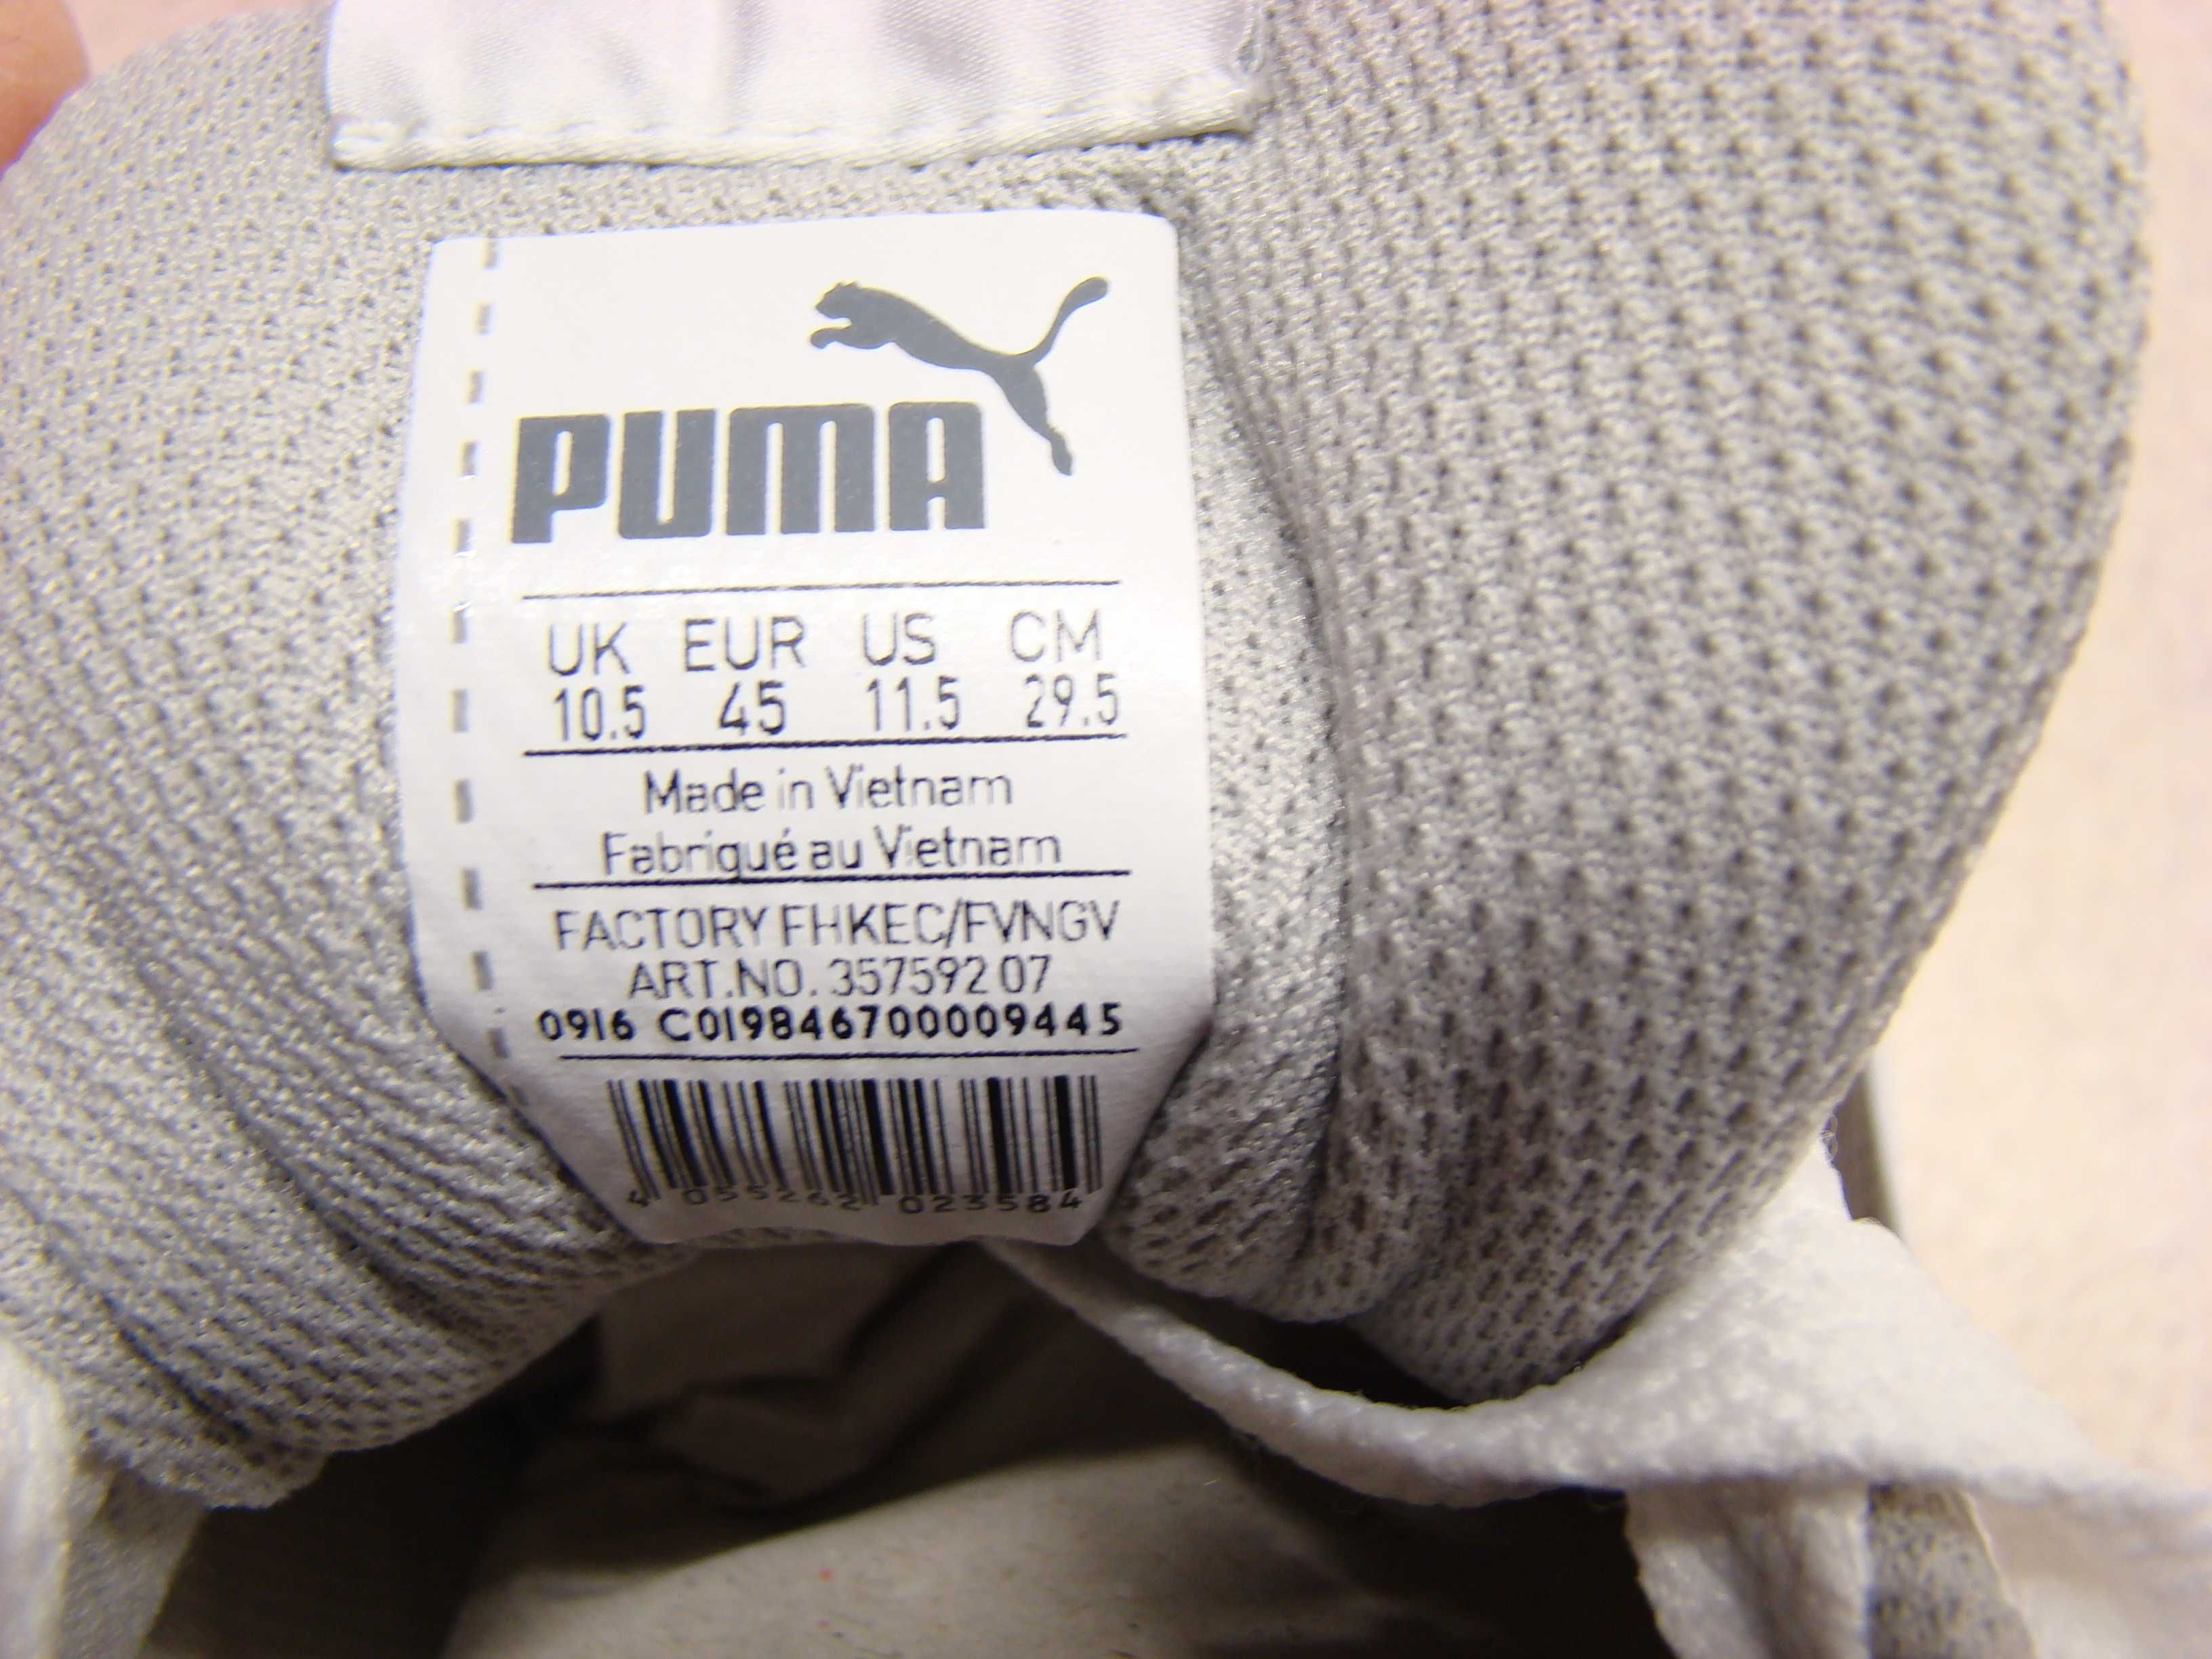 Puma court point vulc męskie buty sportowe 357592 rozmiar 45 białe